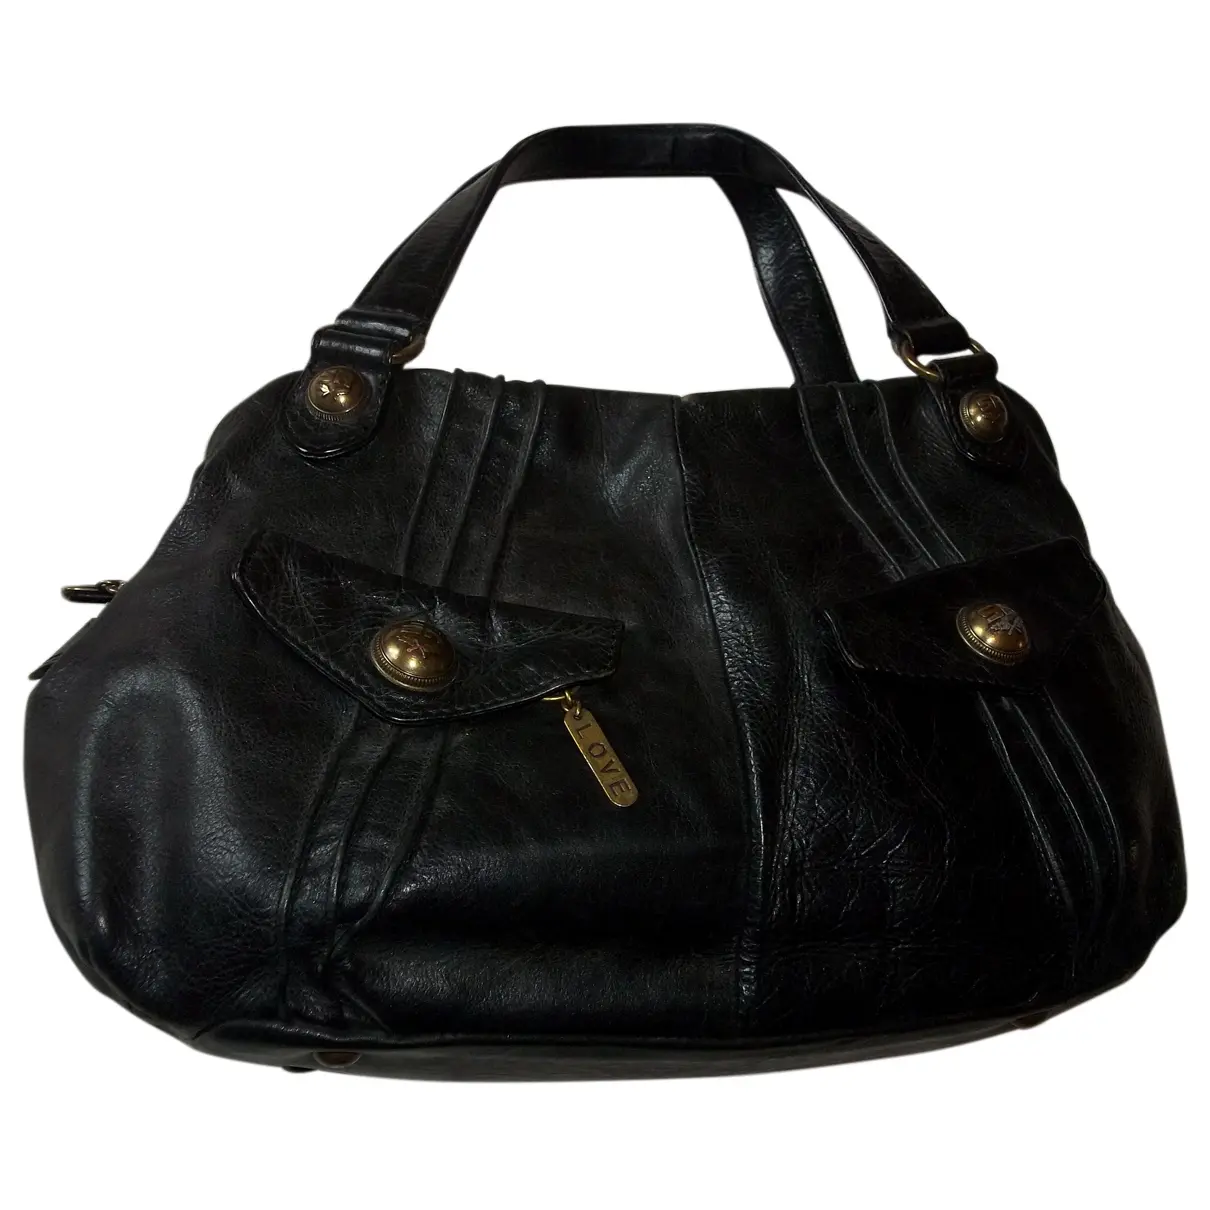 Leather handbag Sonia Rykiel - Vintage